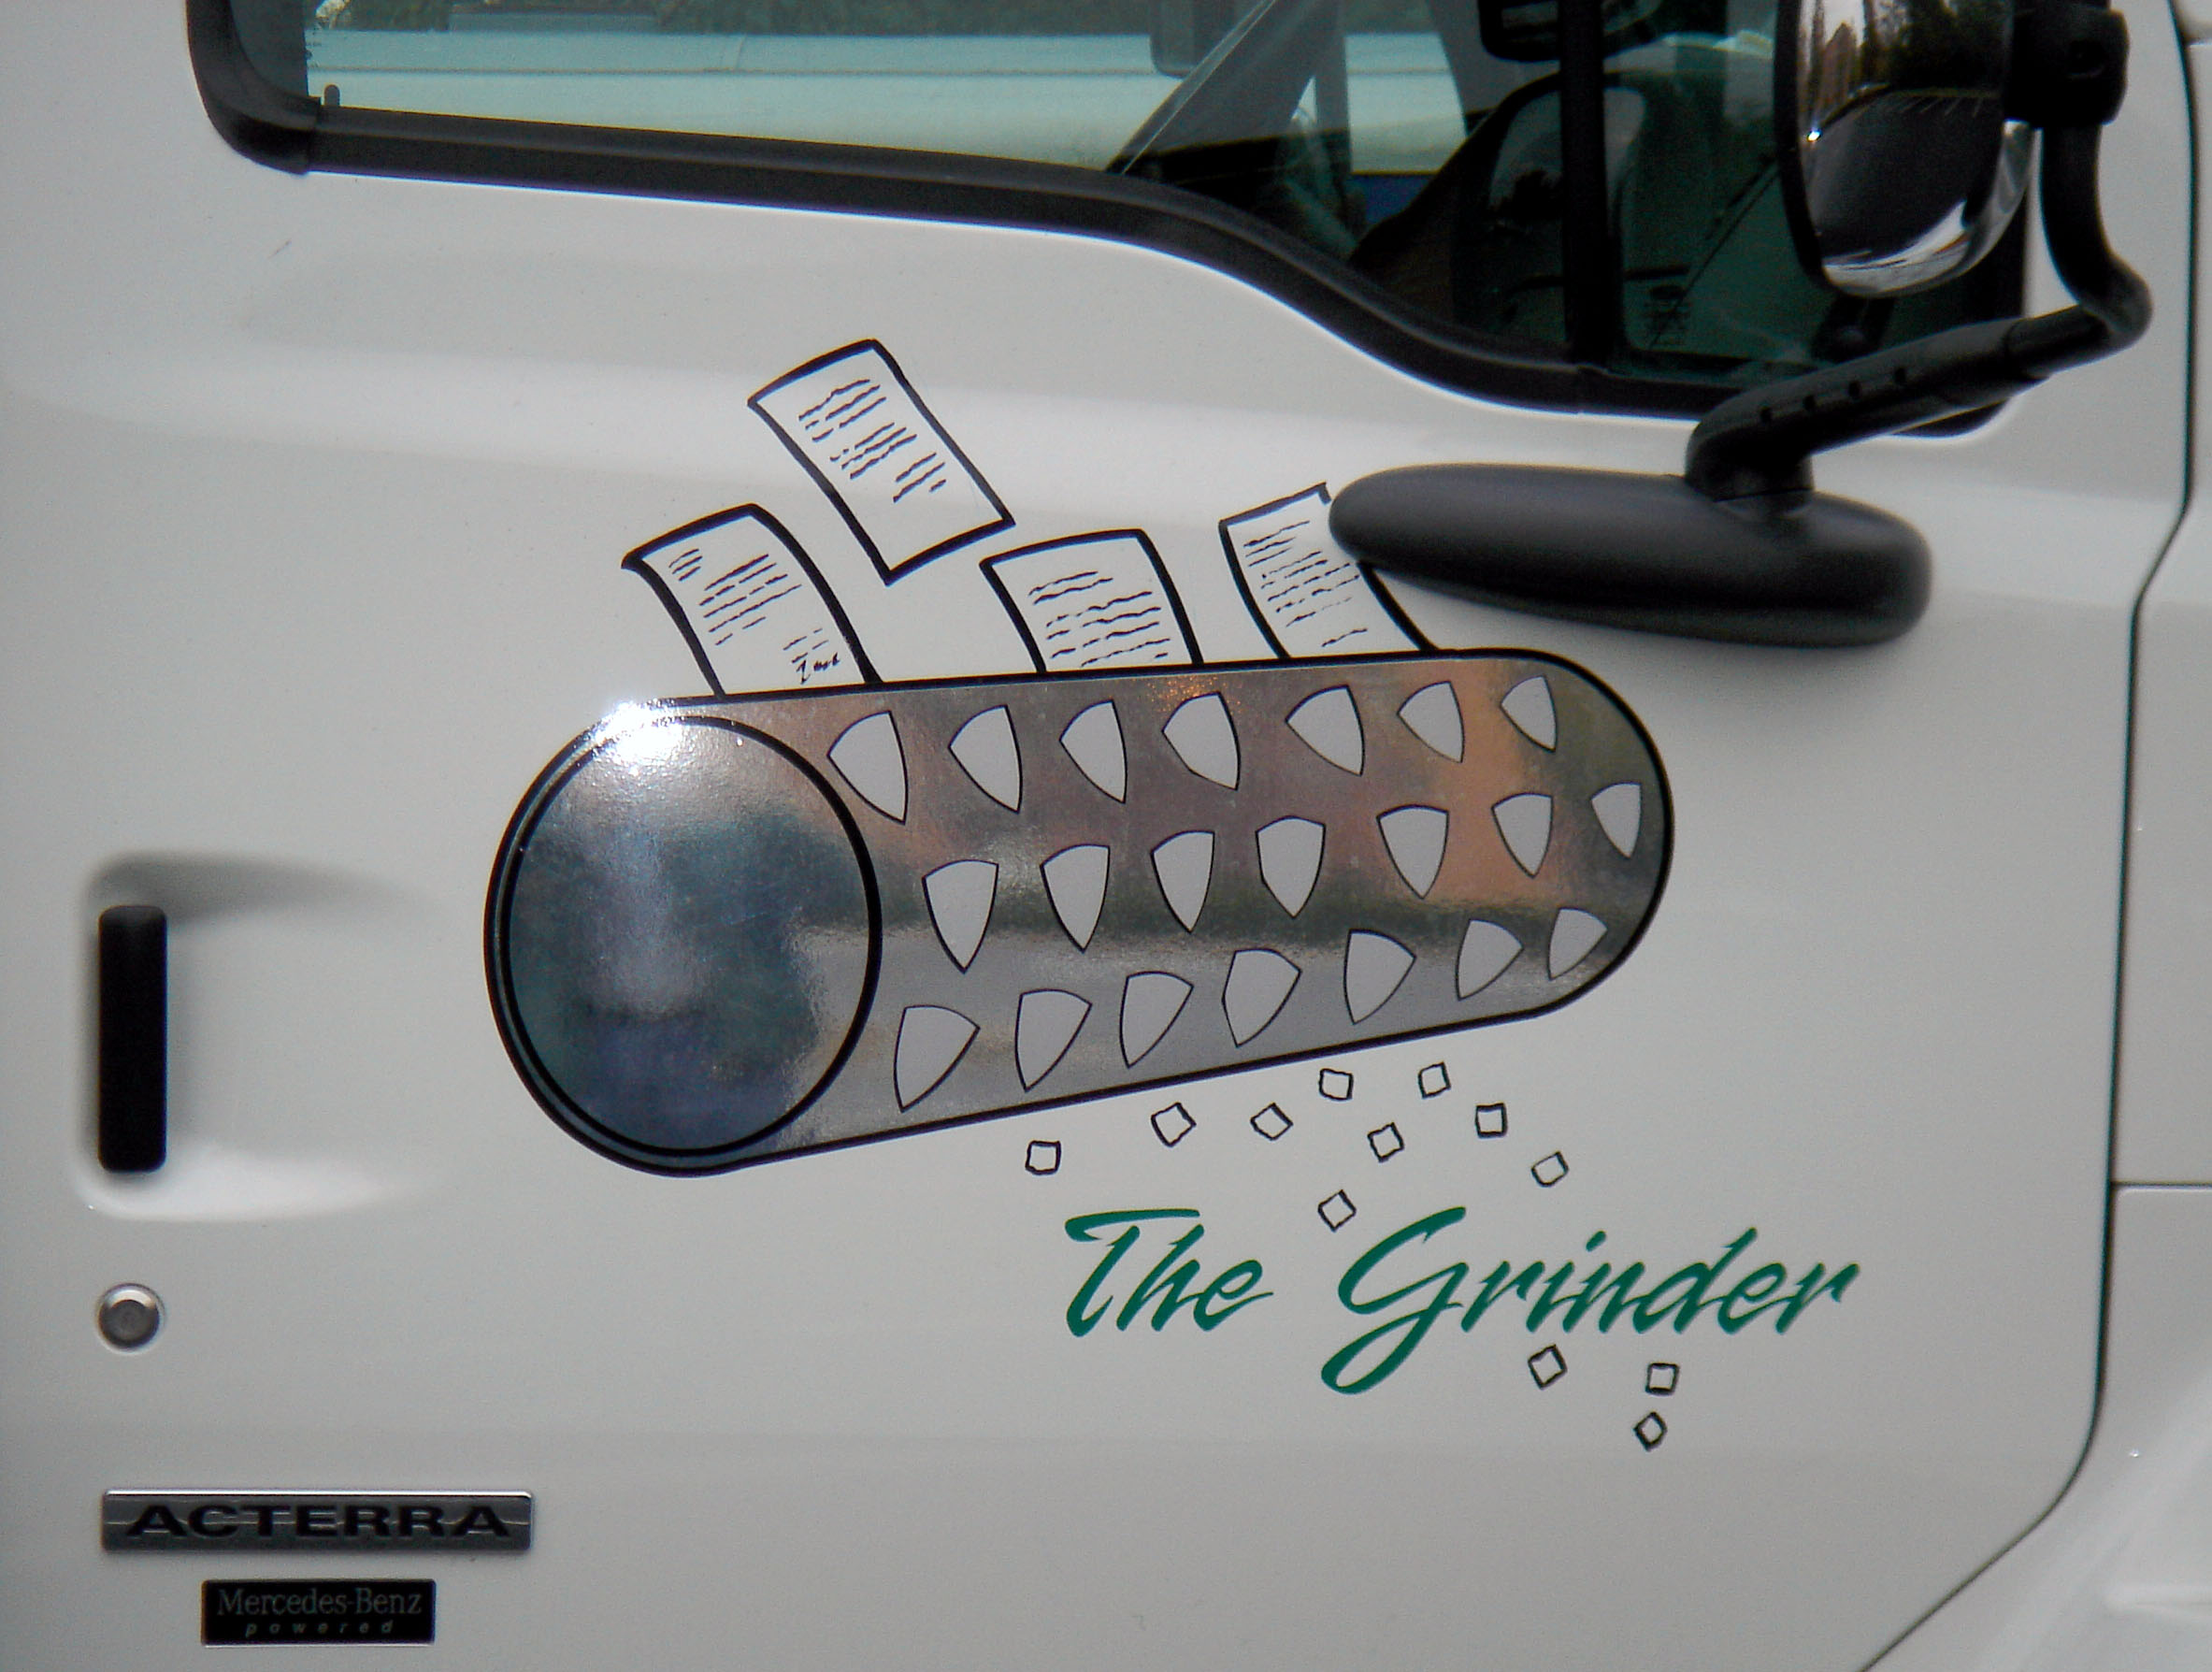 The Grinder